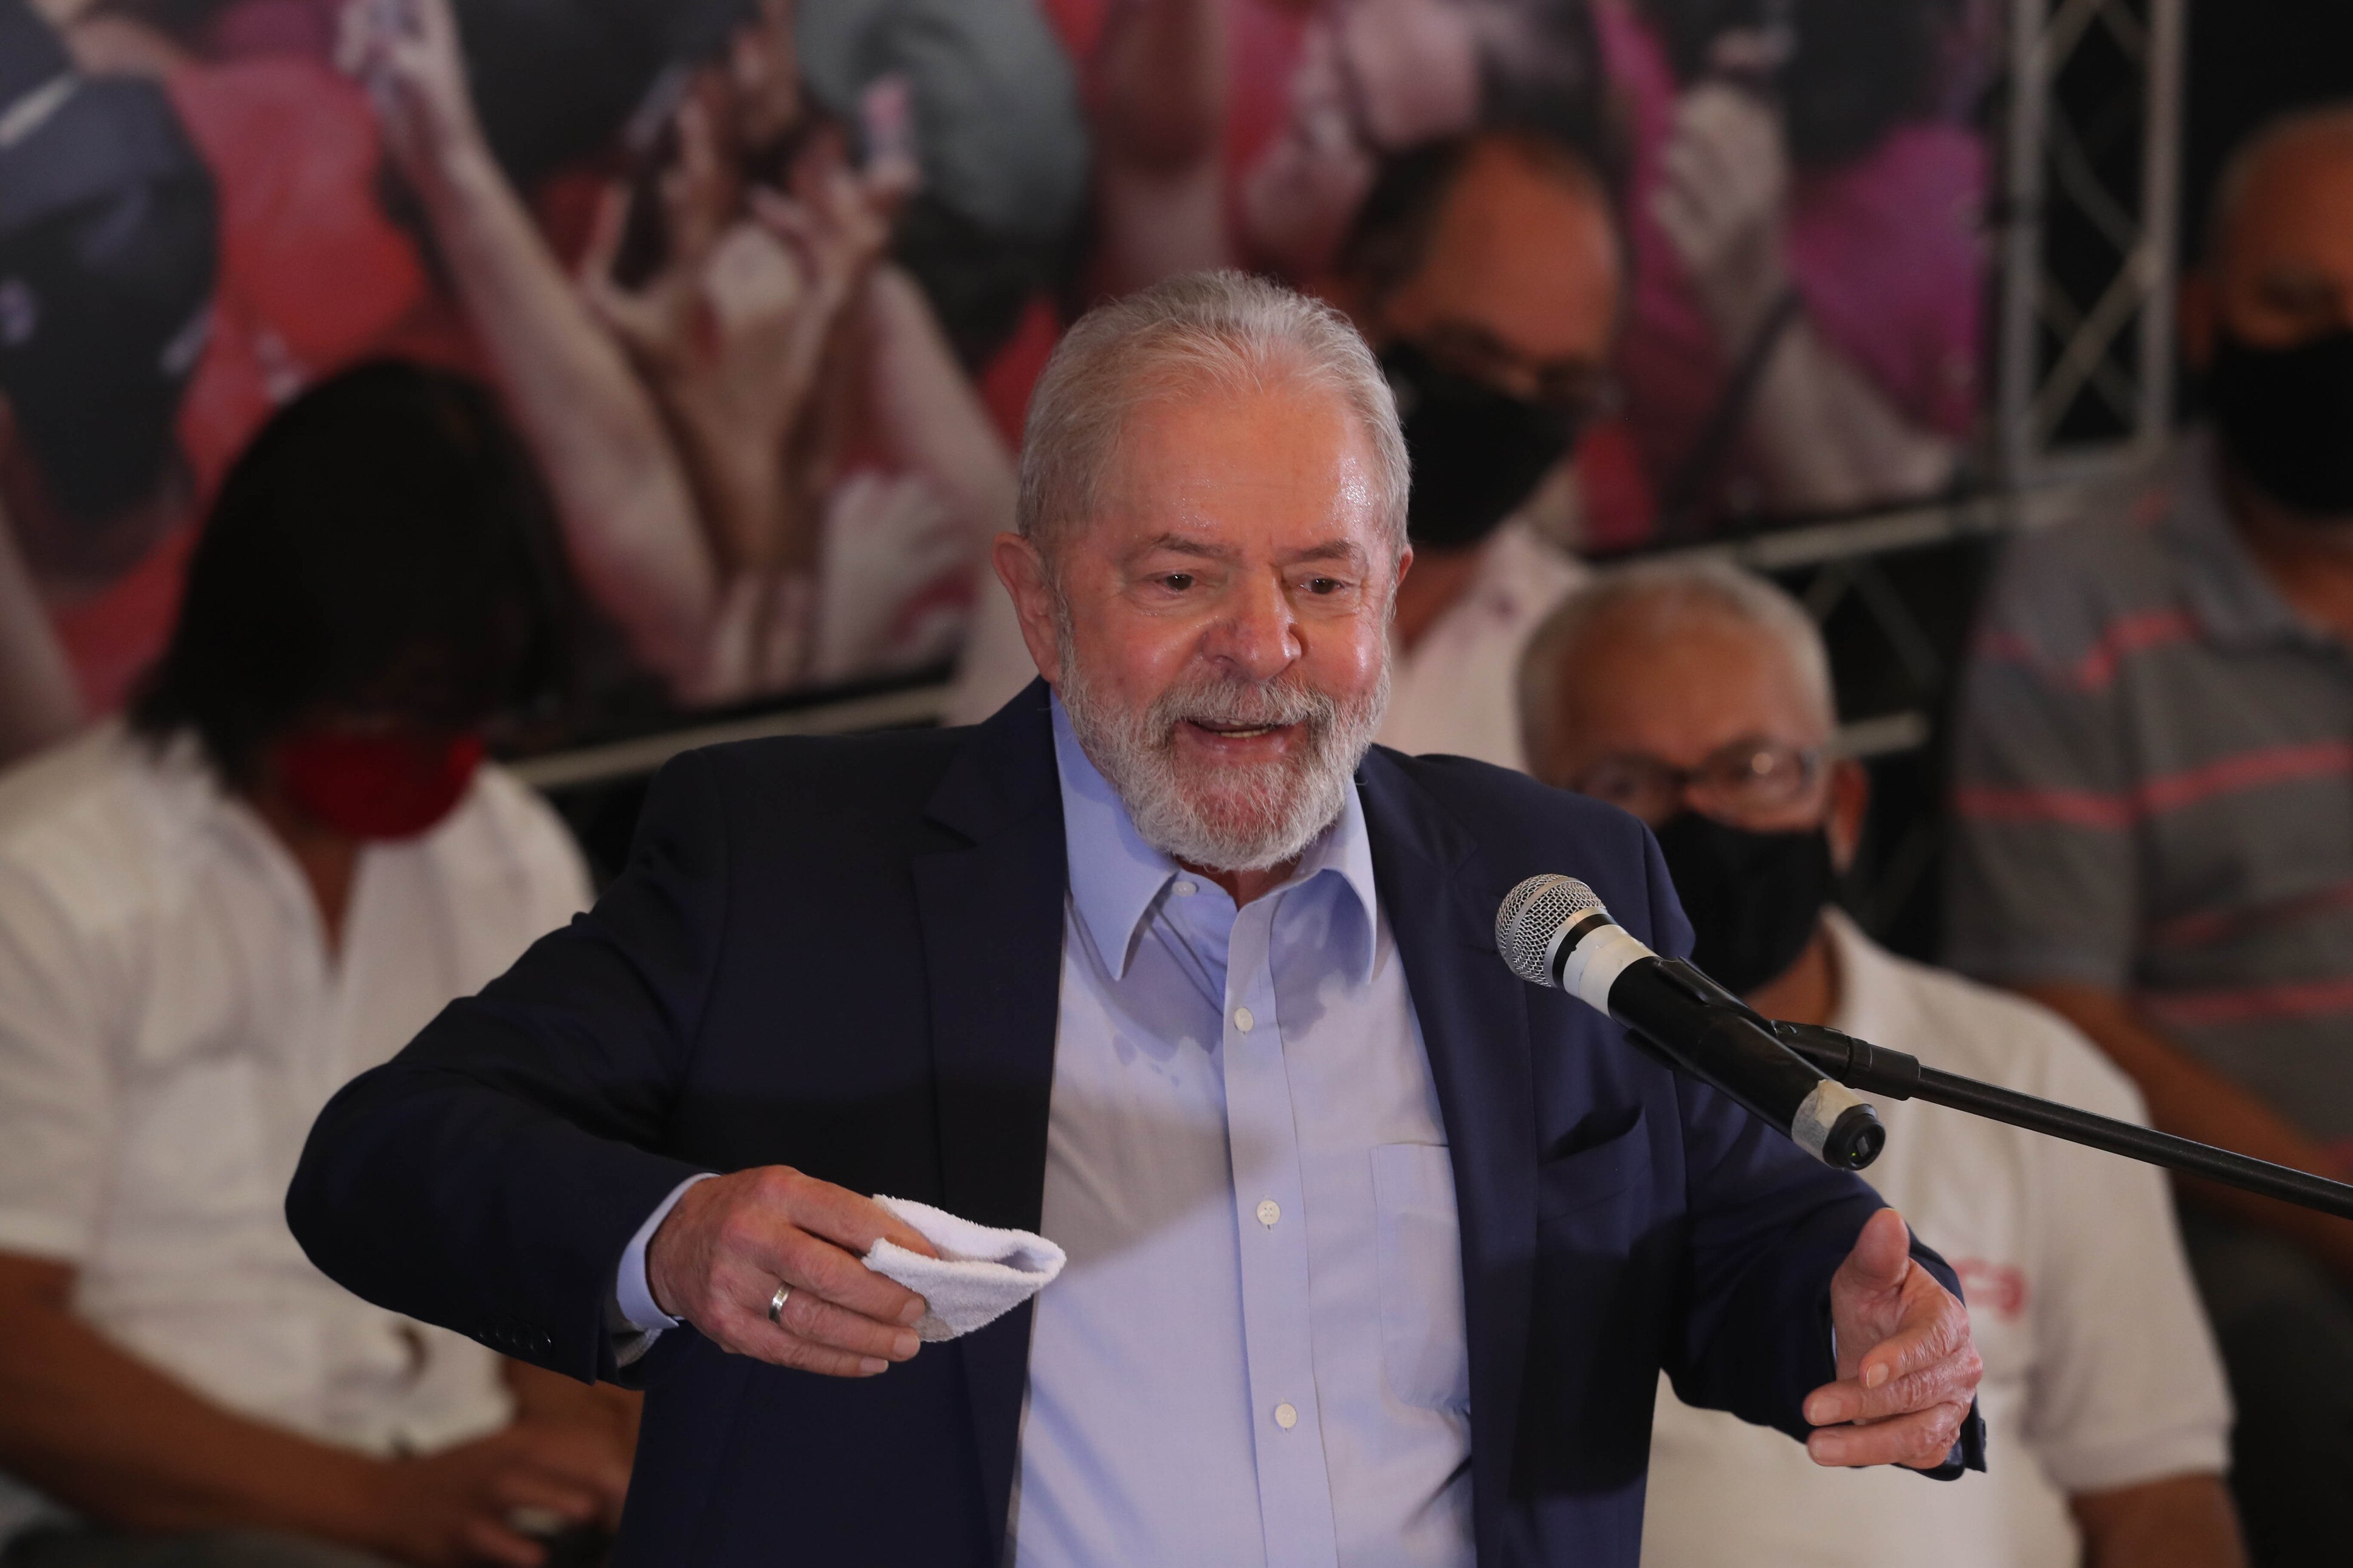 Ex-presidente da OAS que incriminou Lula teria sido tratado com  desconfiança pela Lava-Jato